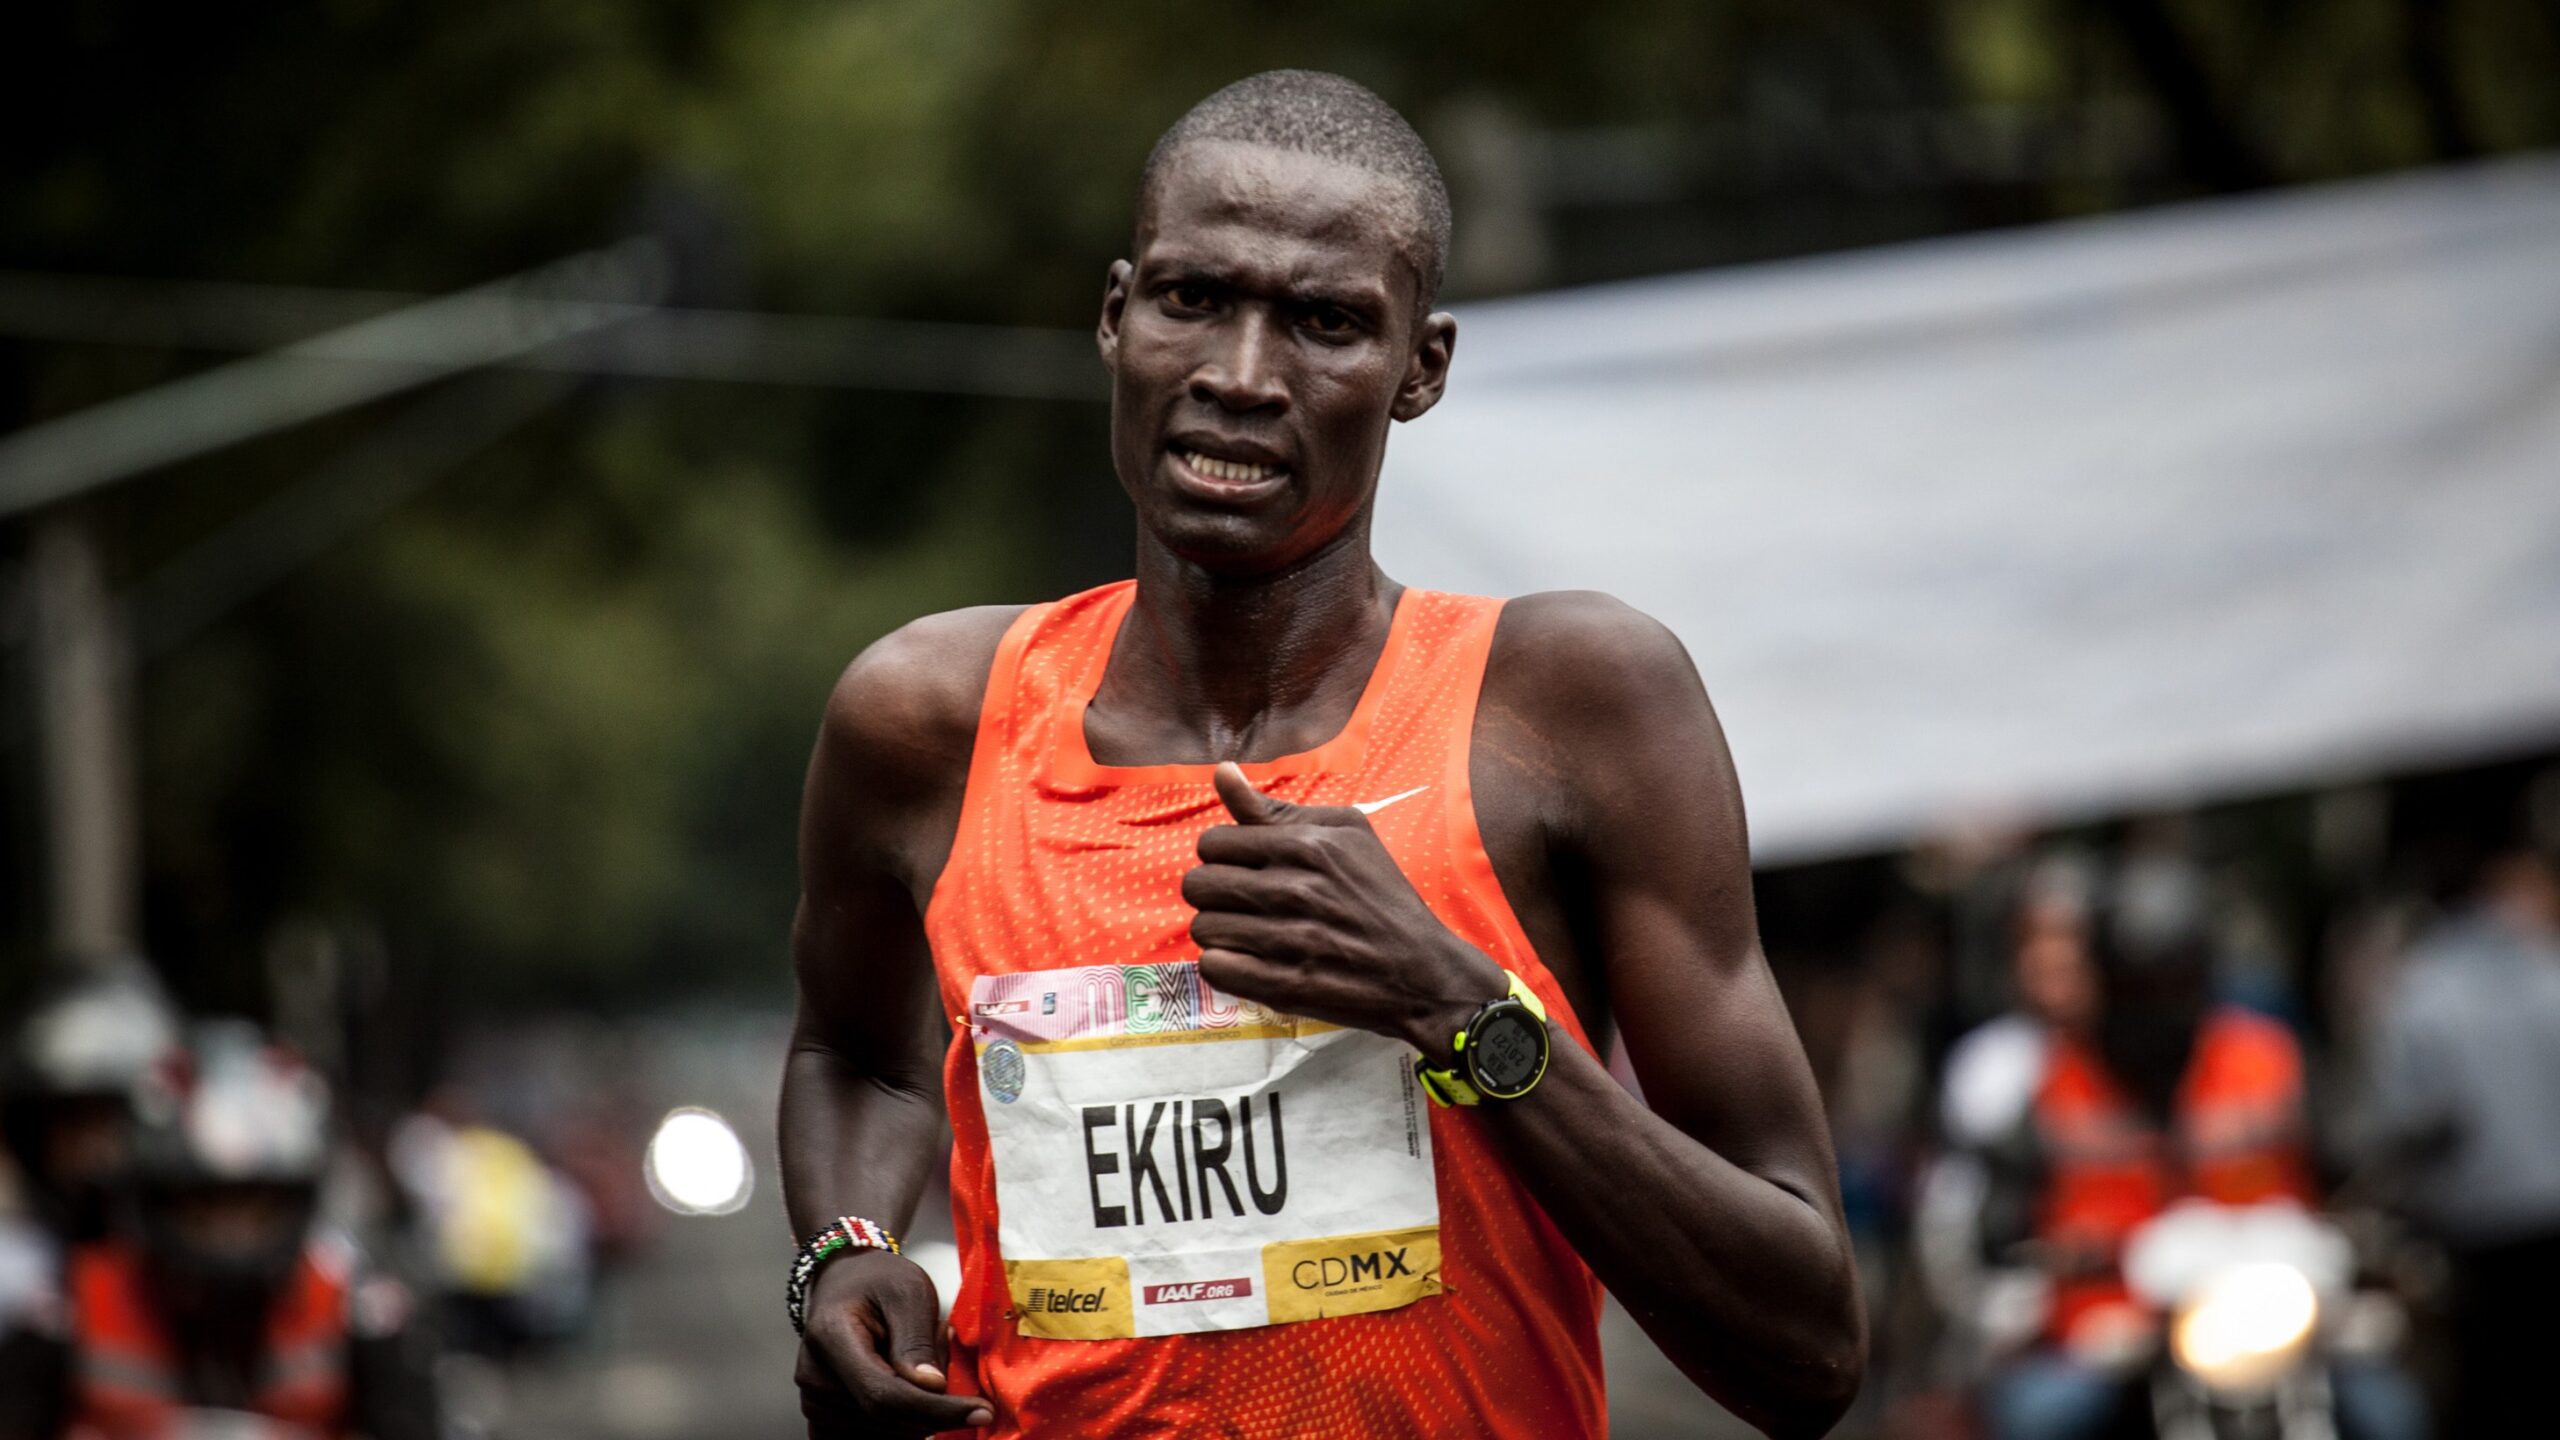 Kenyan Marathon Runner Titus Ekiru Receives 10-Year Doping Ban